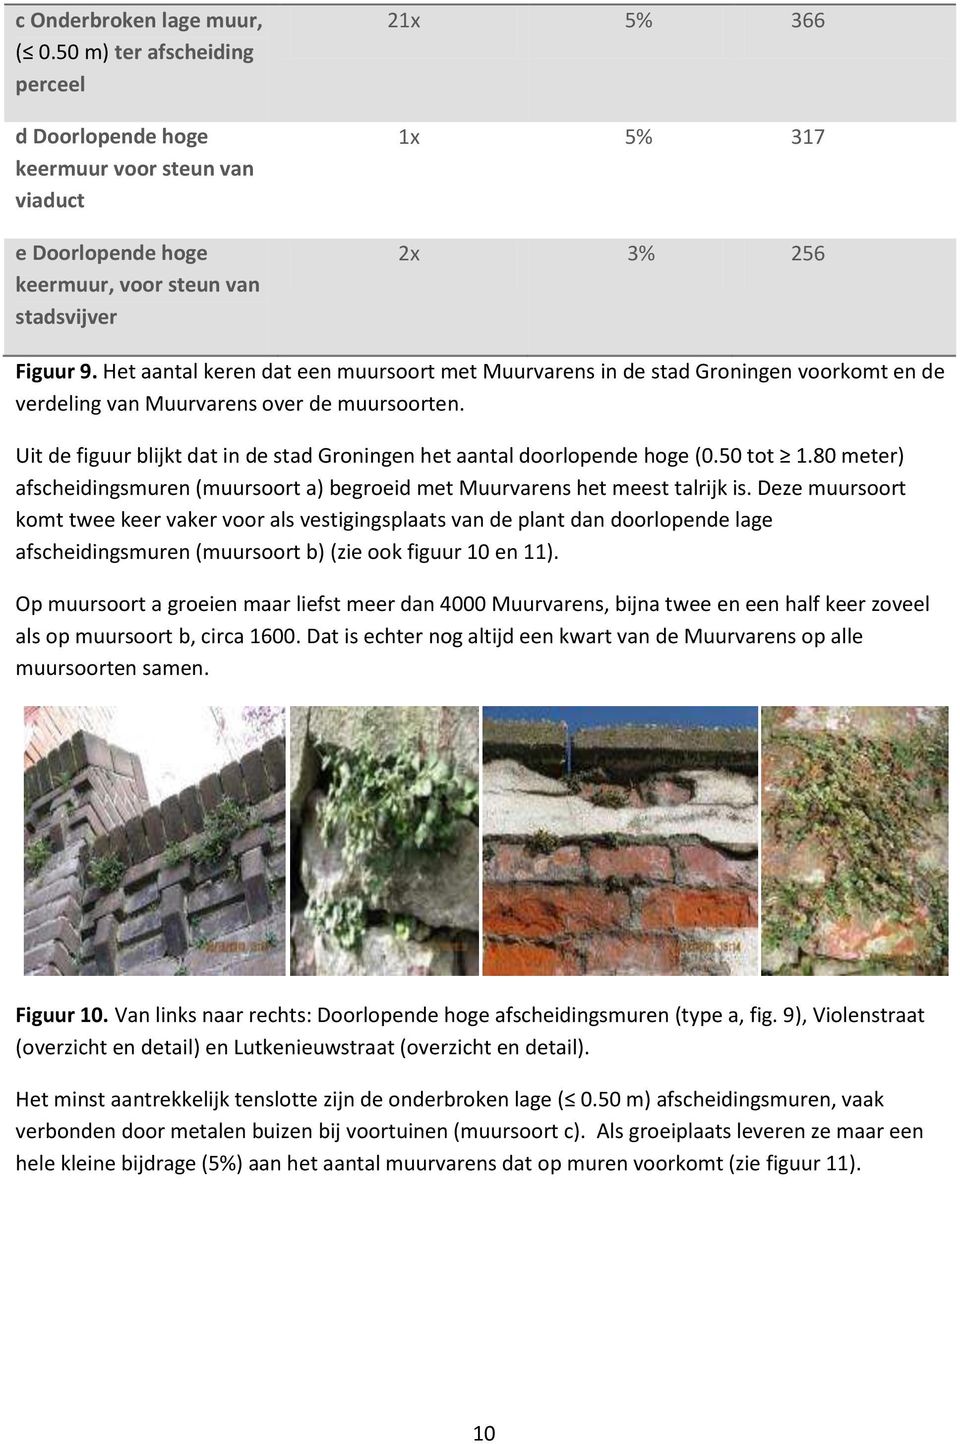 Het aantal keren dat een muursoort met Muurvarens in de stad Groningen voorkomt en de verdeling van Muurvarens over de muursoorten.